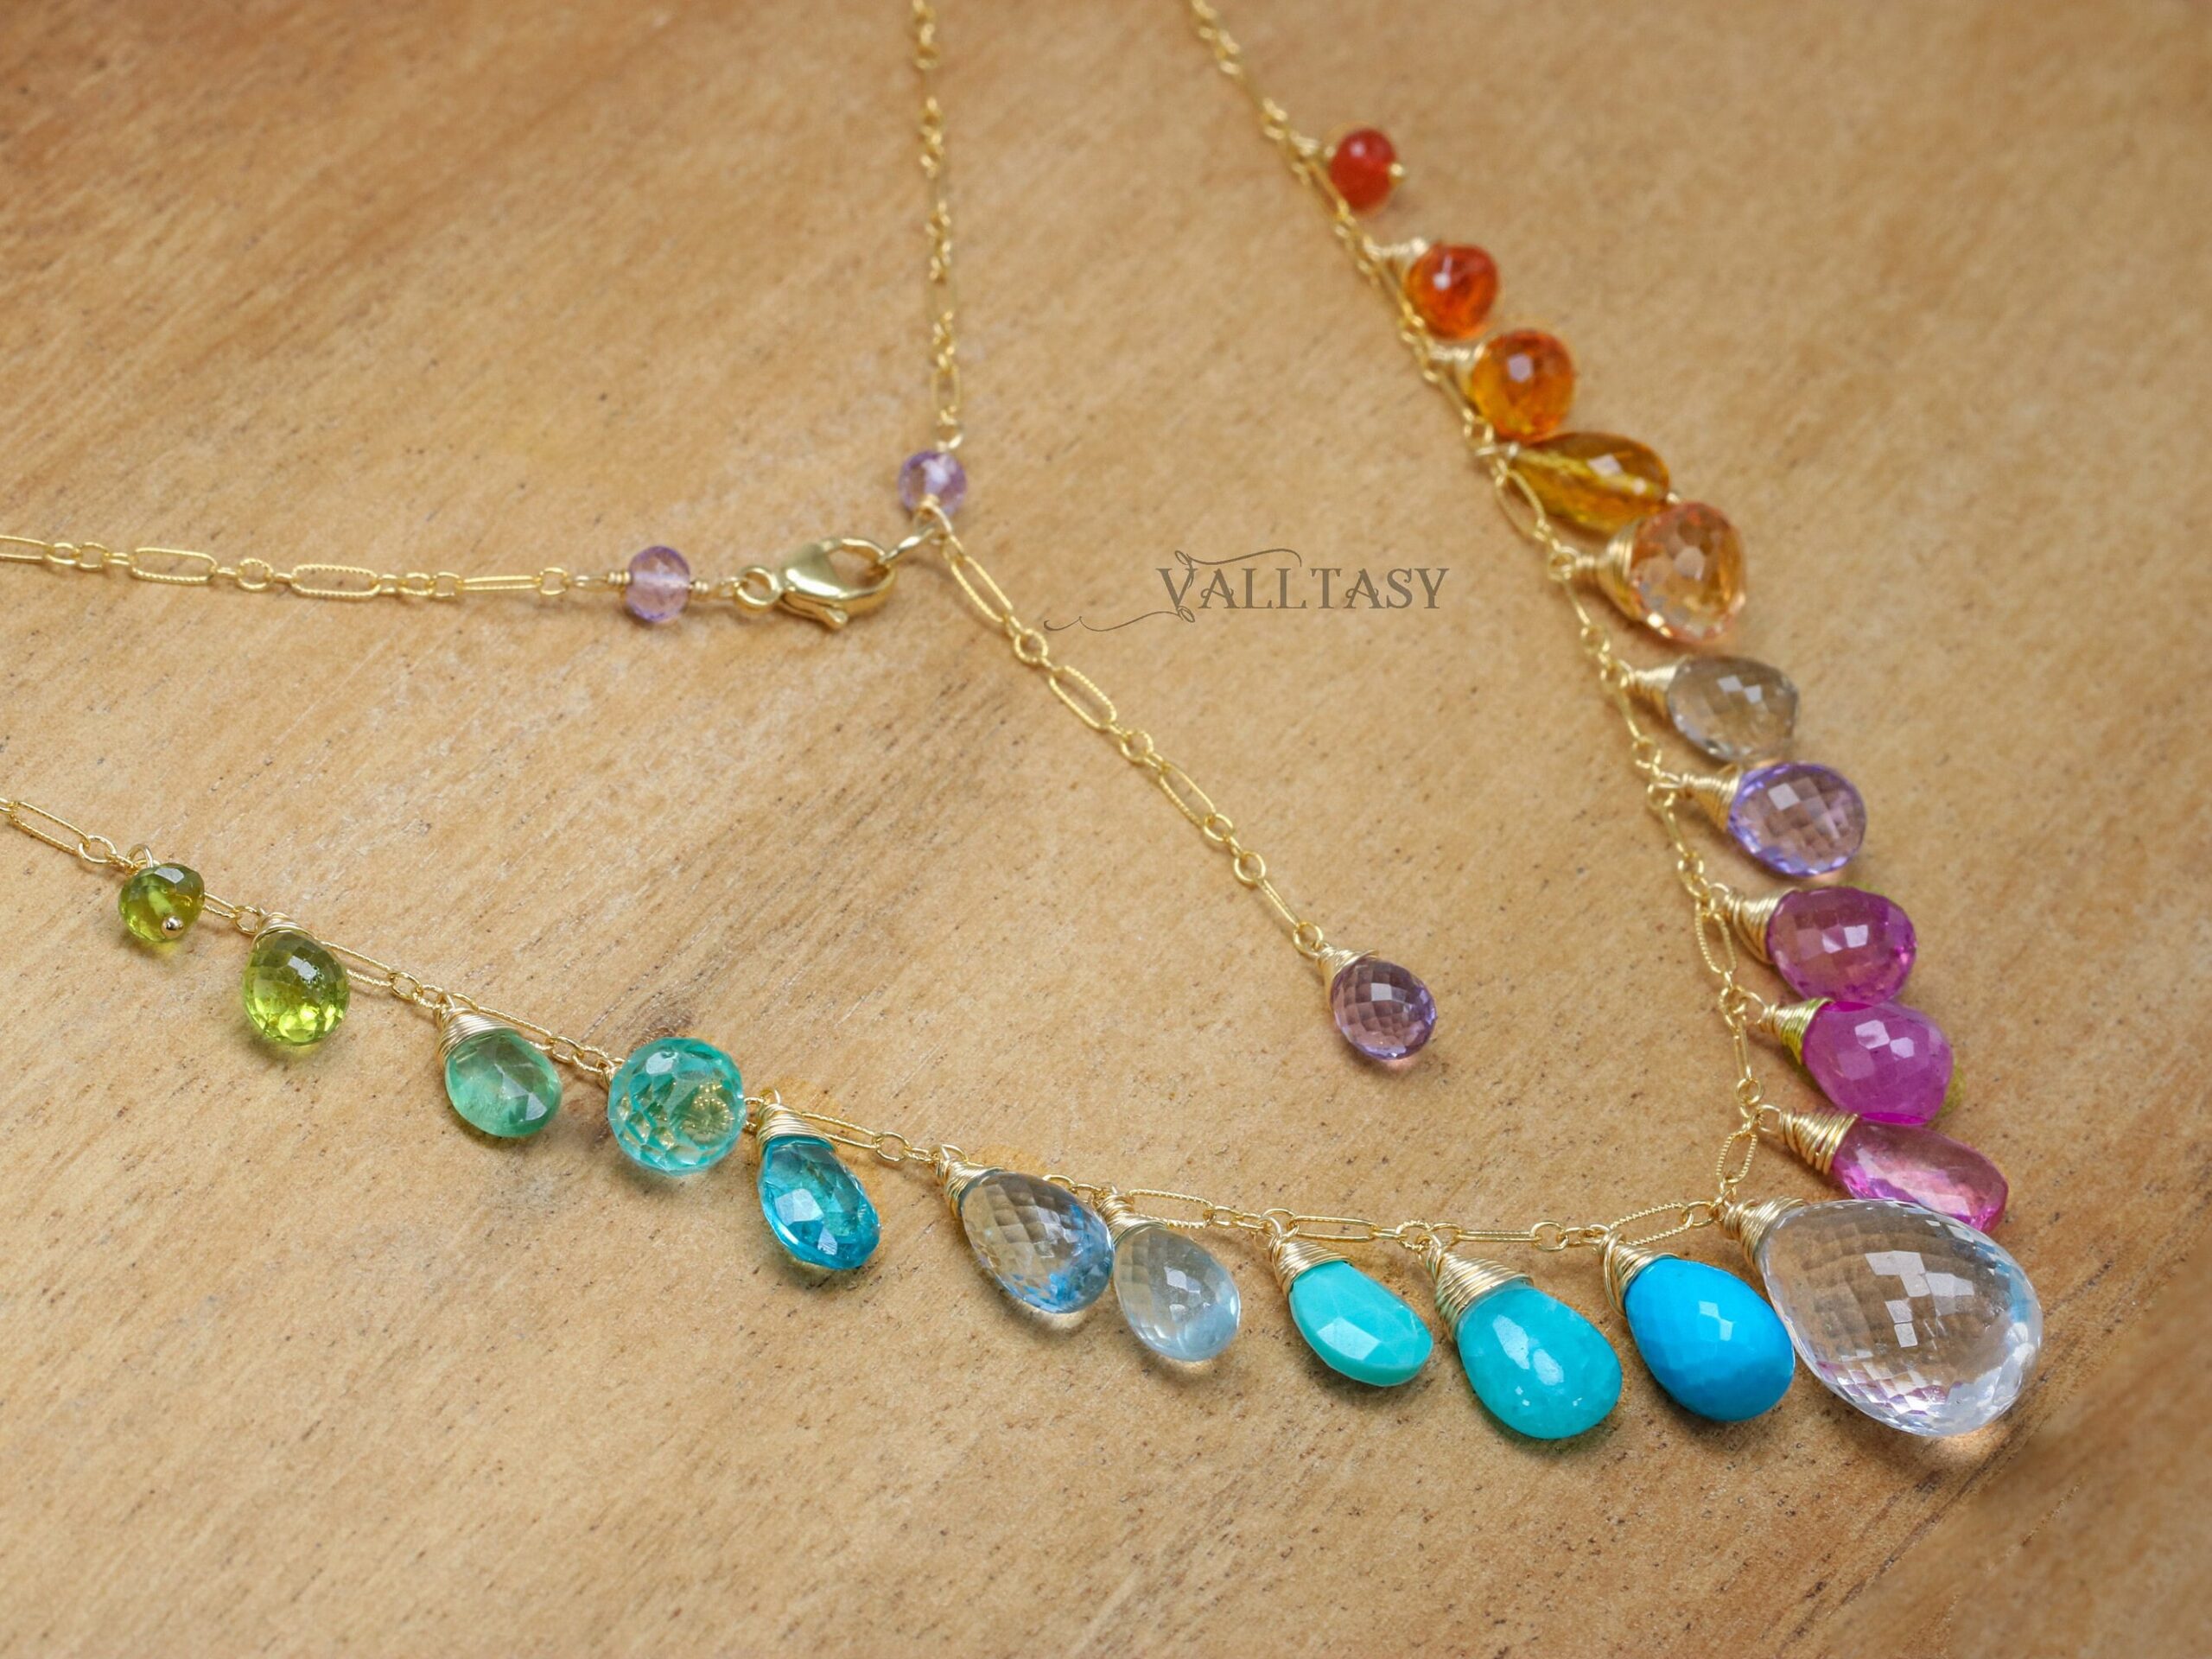 Multi Gemstone Necklace, Precious Drop Candy Necklace